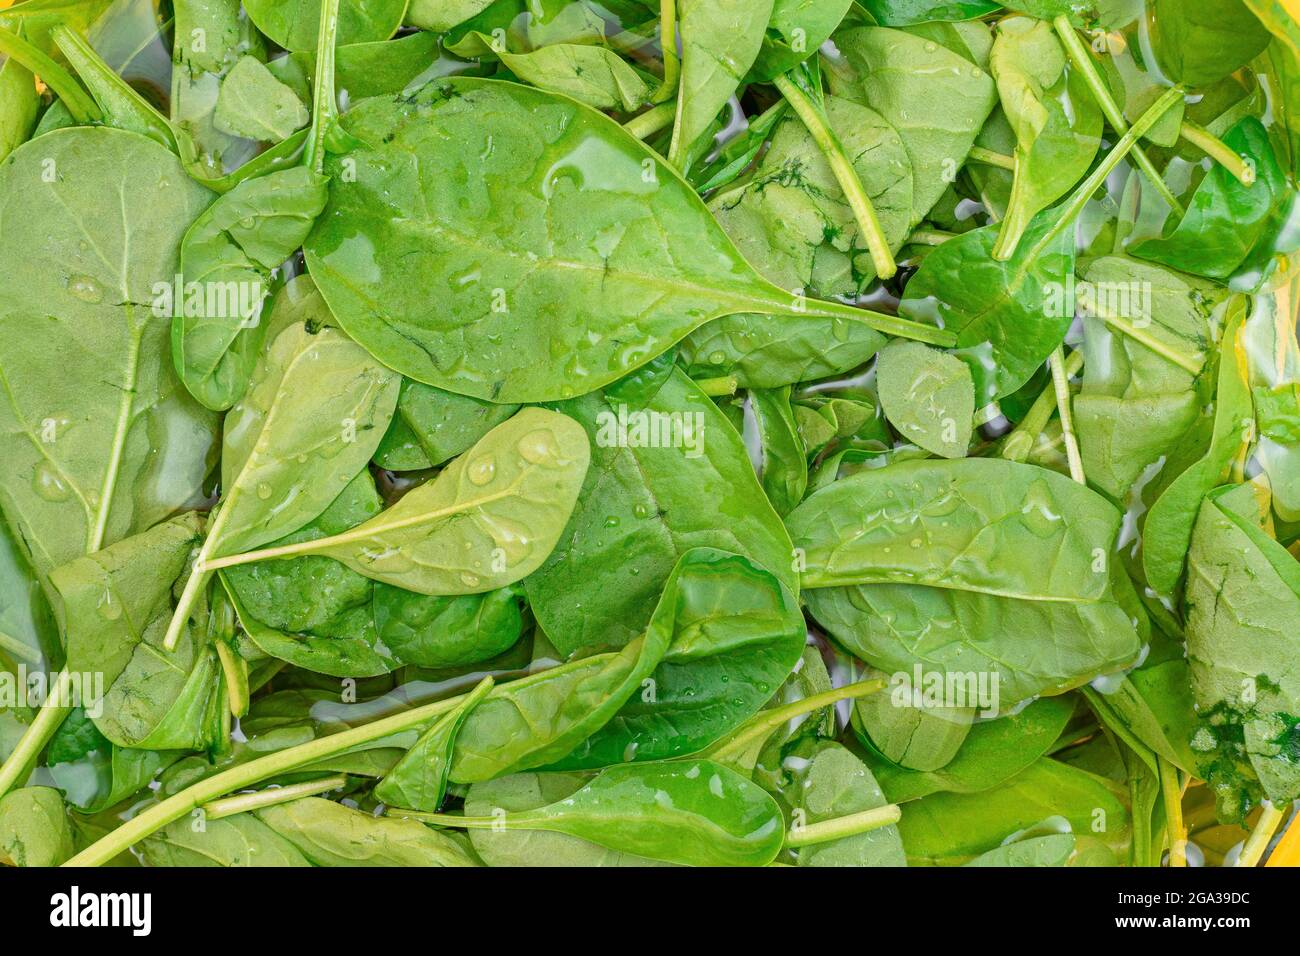 Frisches Baby Spinat Blätter im Wasser - Draufsicht. Vegane und vegetarische Kultur. Rohkost, Grüne Blätter. Gesunde Ernährung Stockfoto